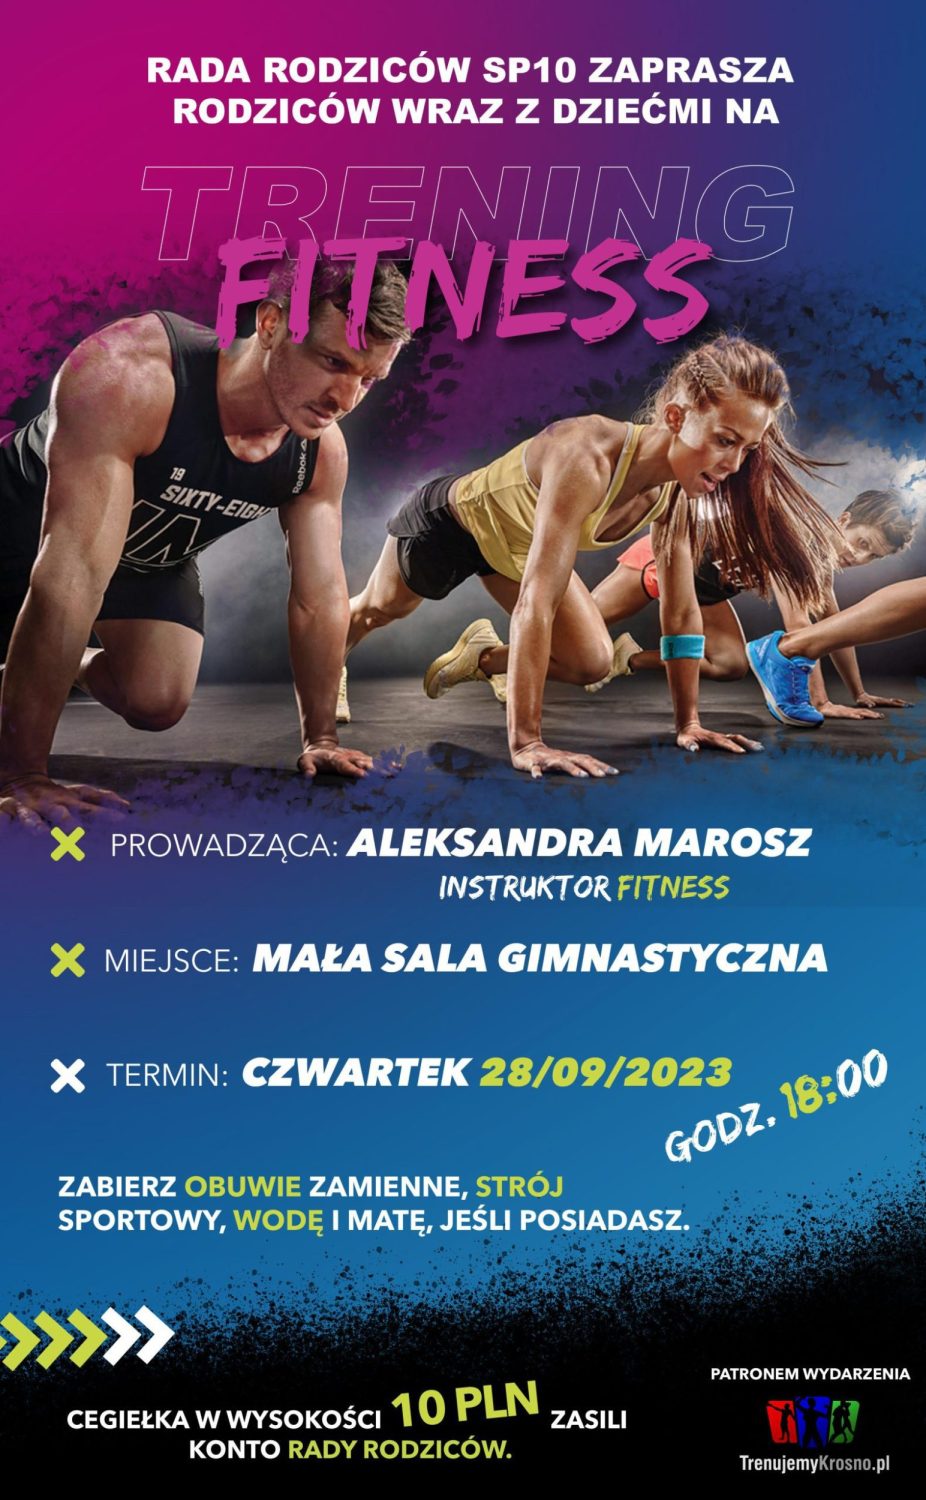 Za zdjęciu znajduje się plakat, promujący zajęcia fitness.